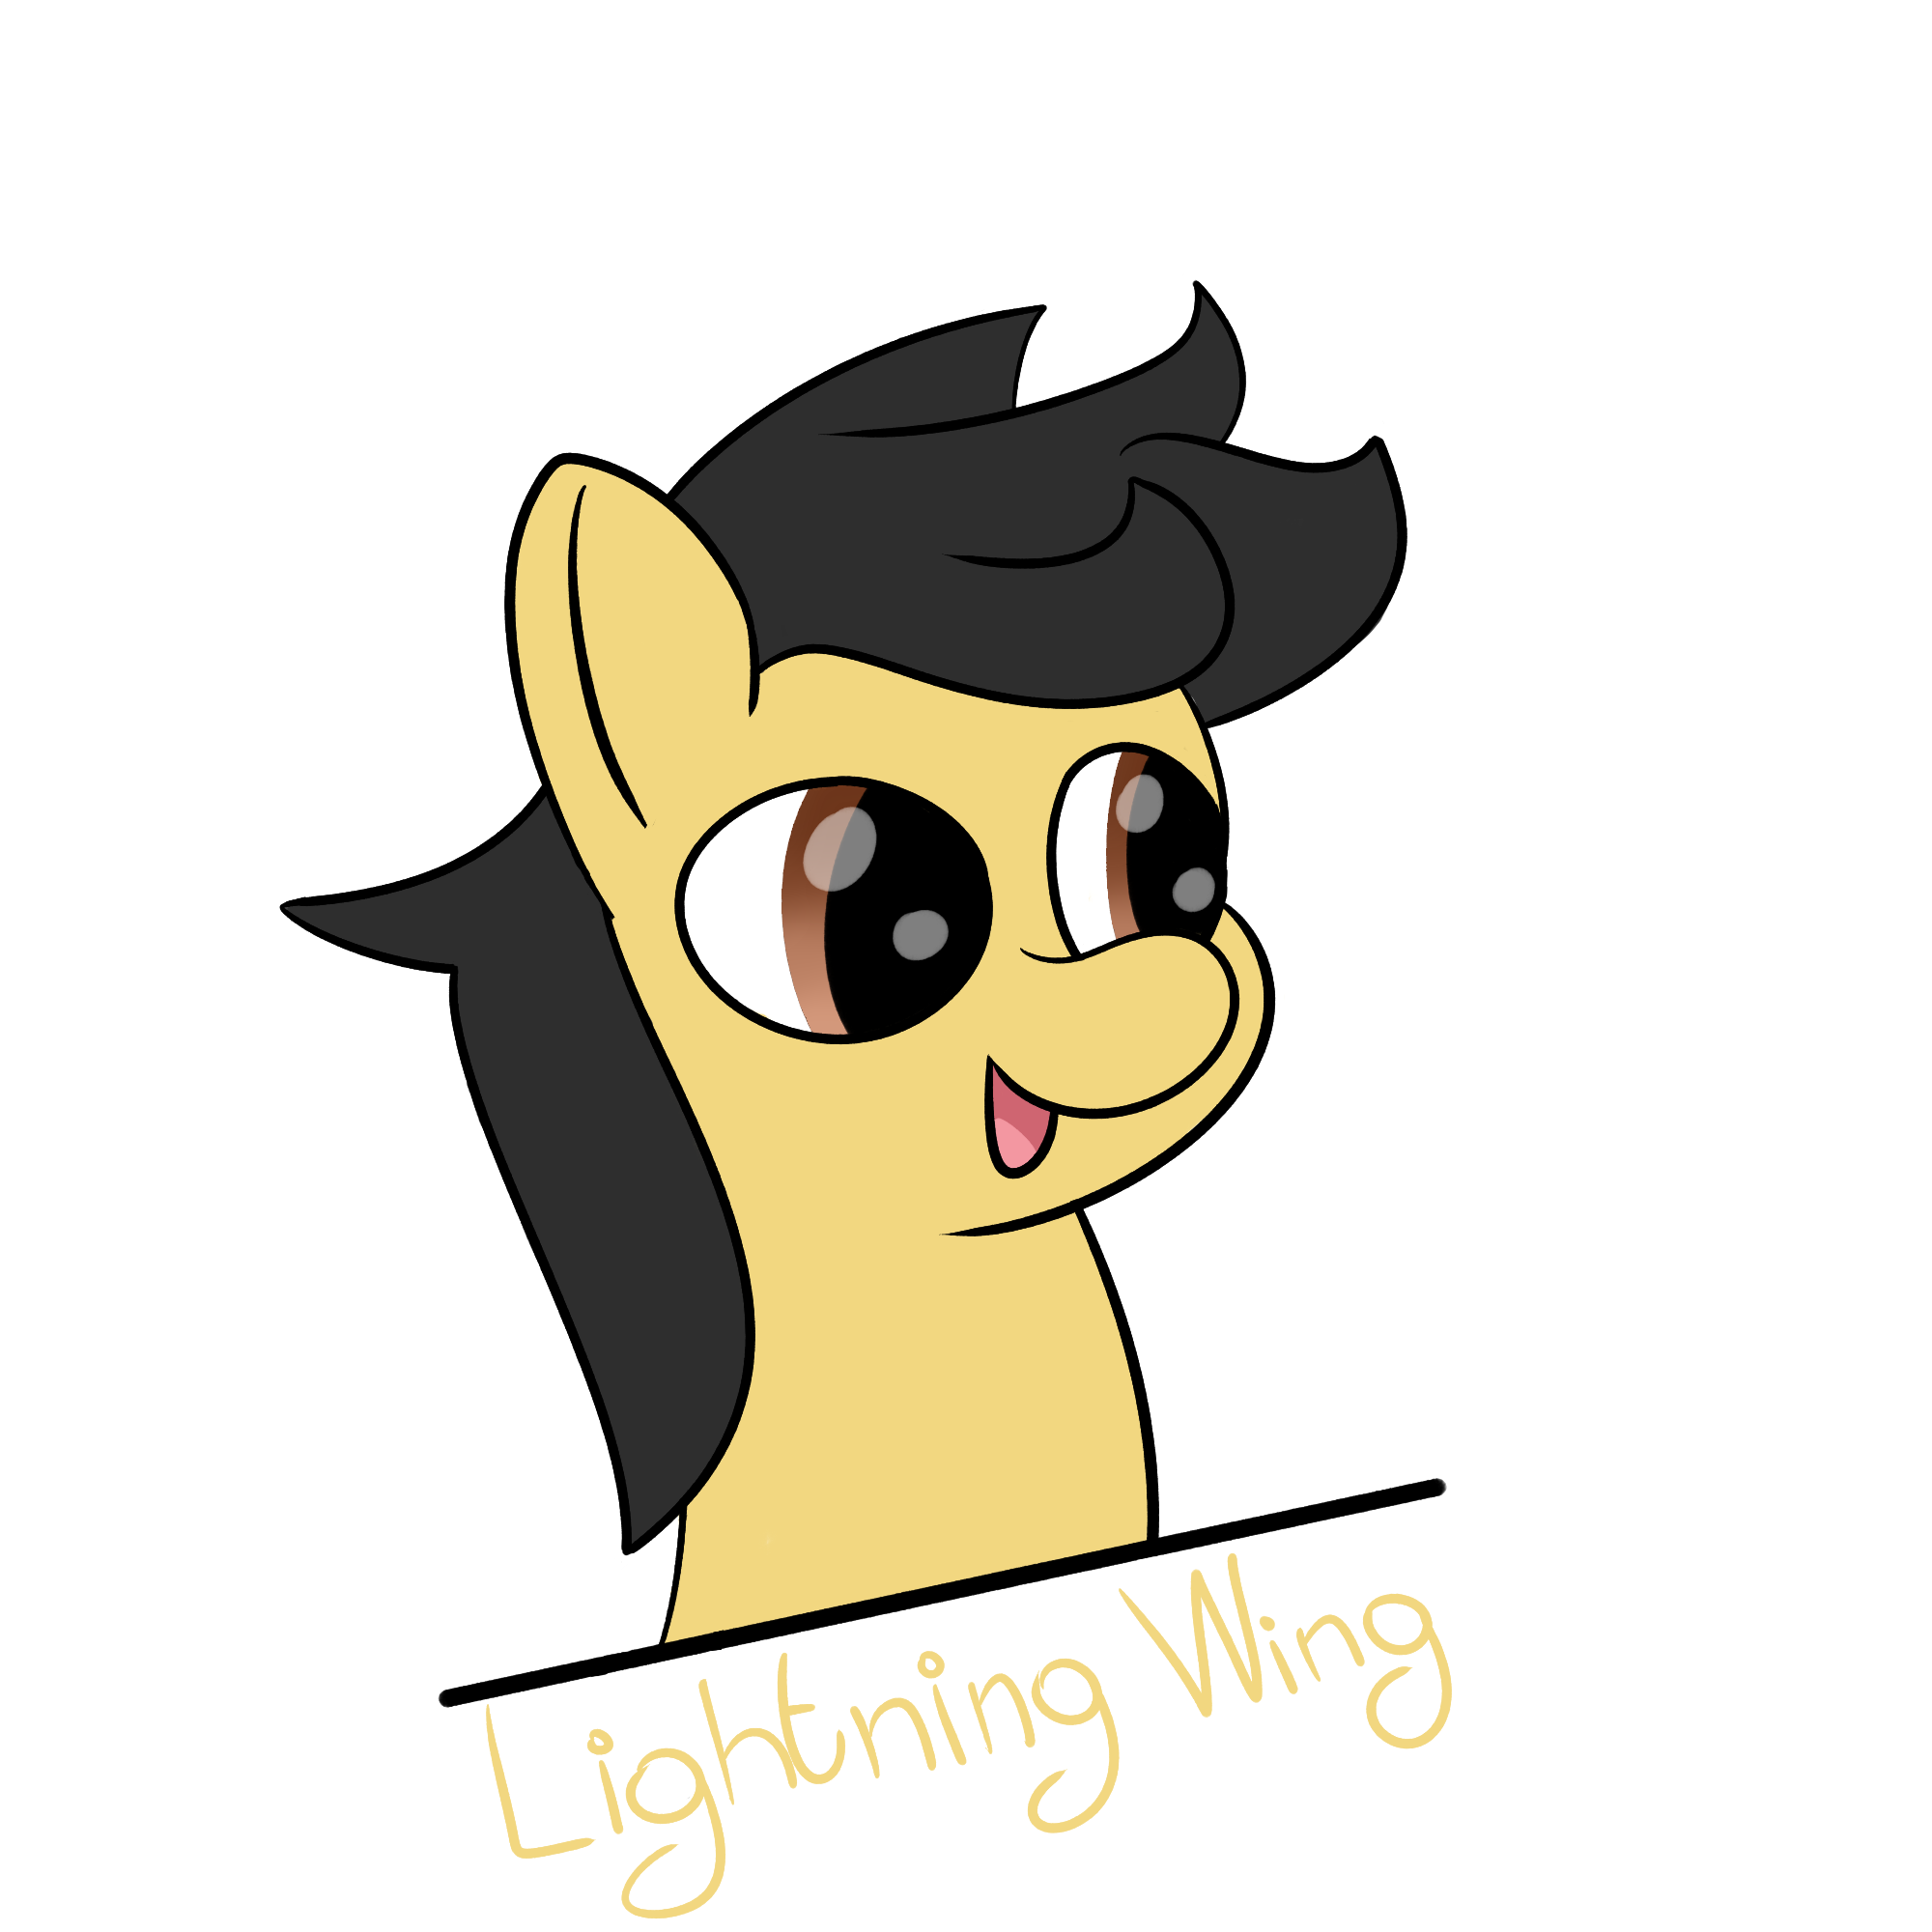 Lightning Wing - Artist and social media assistant